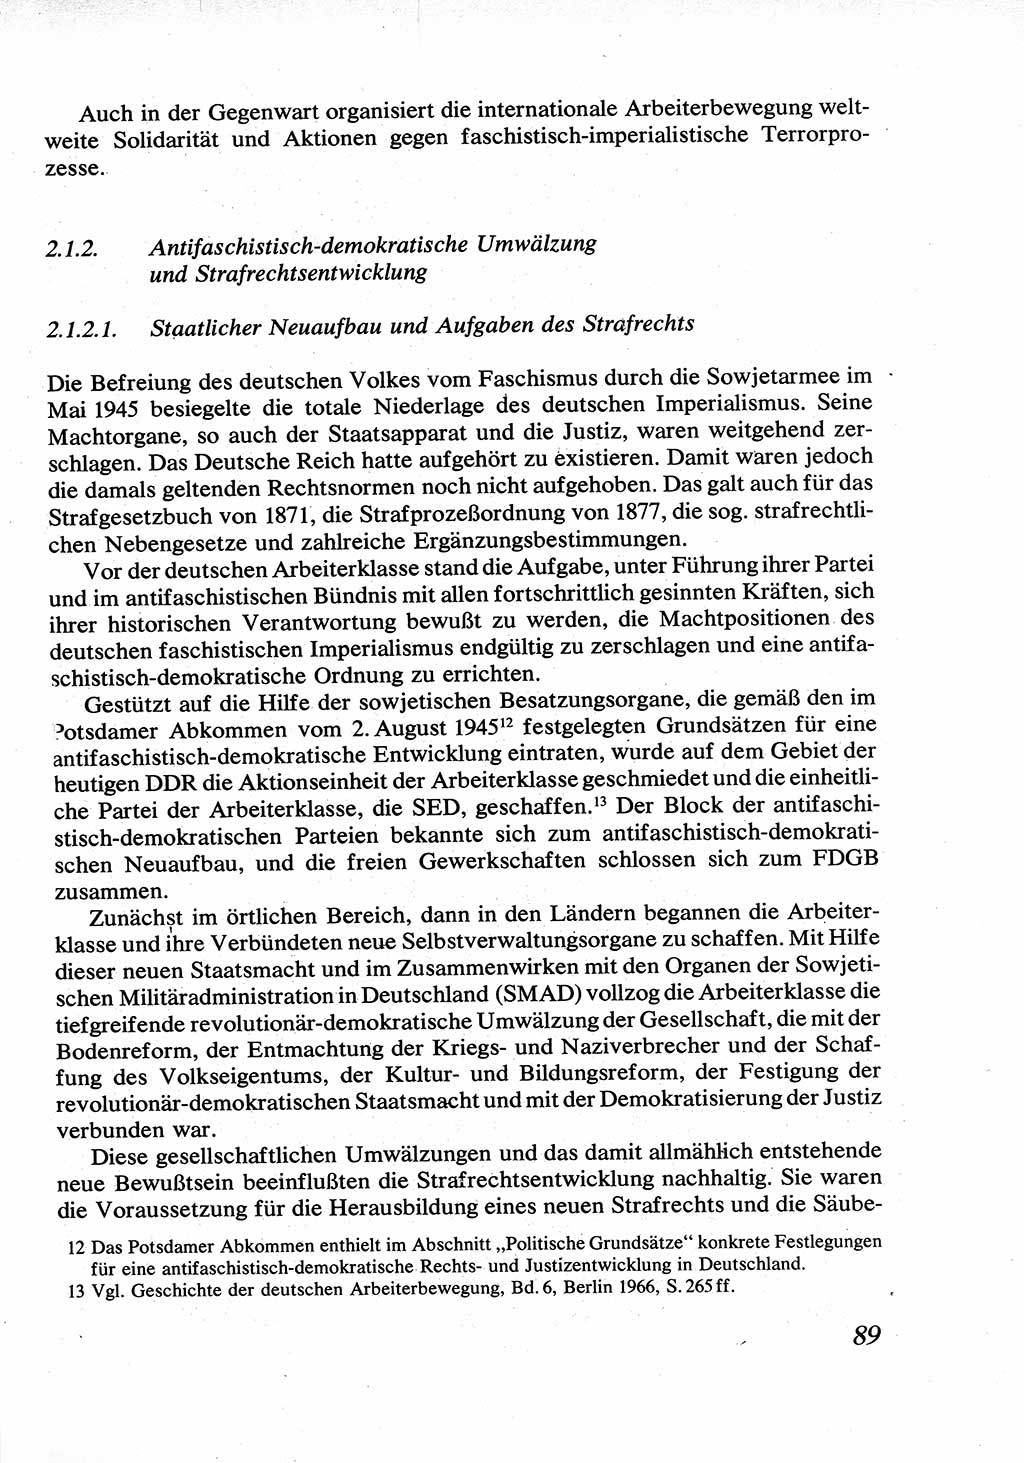 Strafrecht [Deutsche Demokratische Republik (DDR)], Allgemeiner Teil, Lehrbuch 1976, Seite 89 (Strafr. DDR AT Lb. 1976, S. 89)